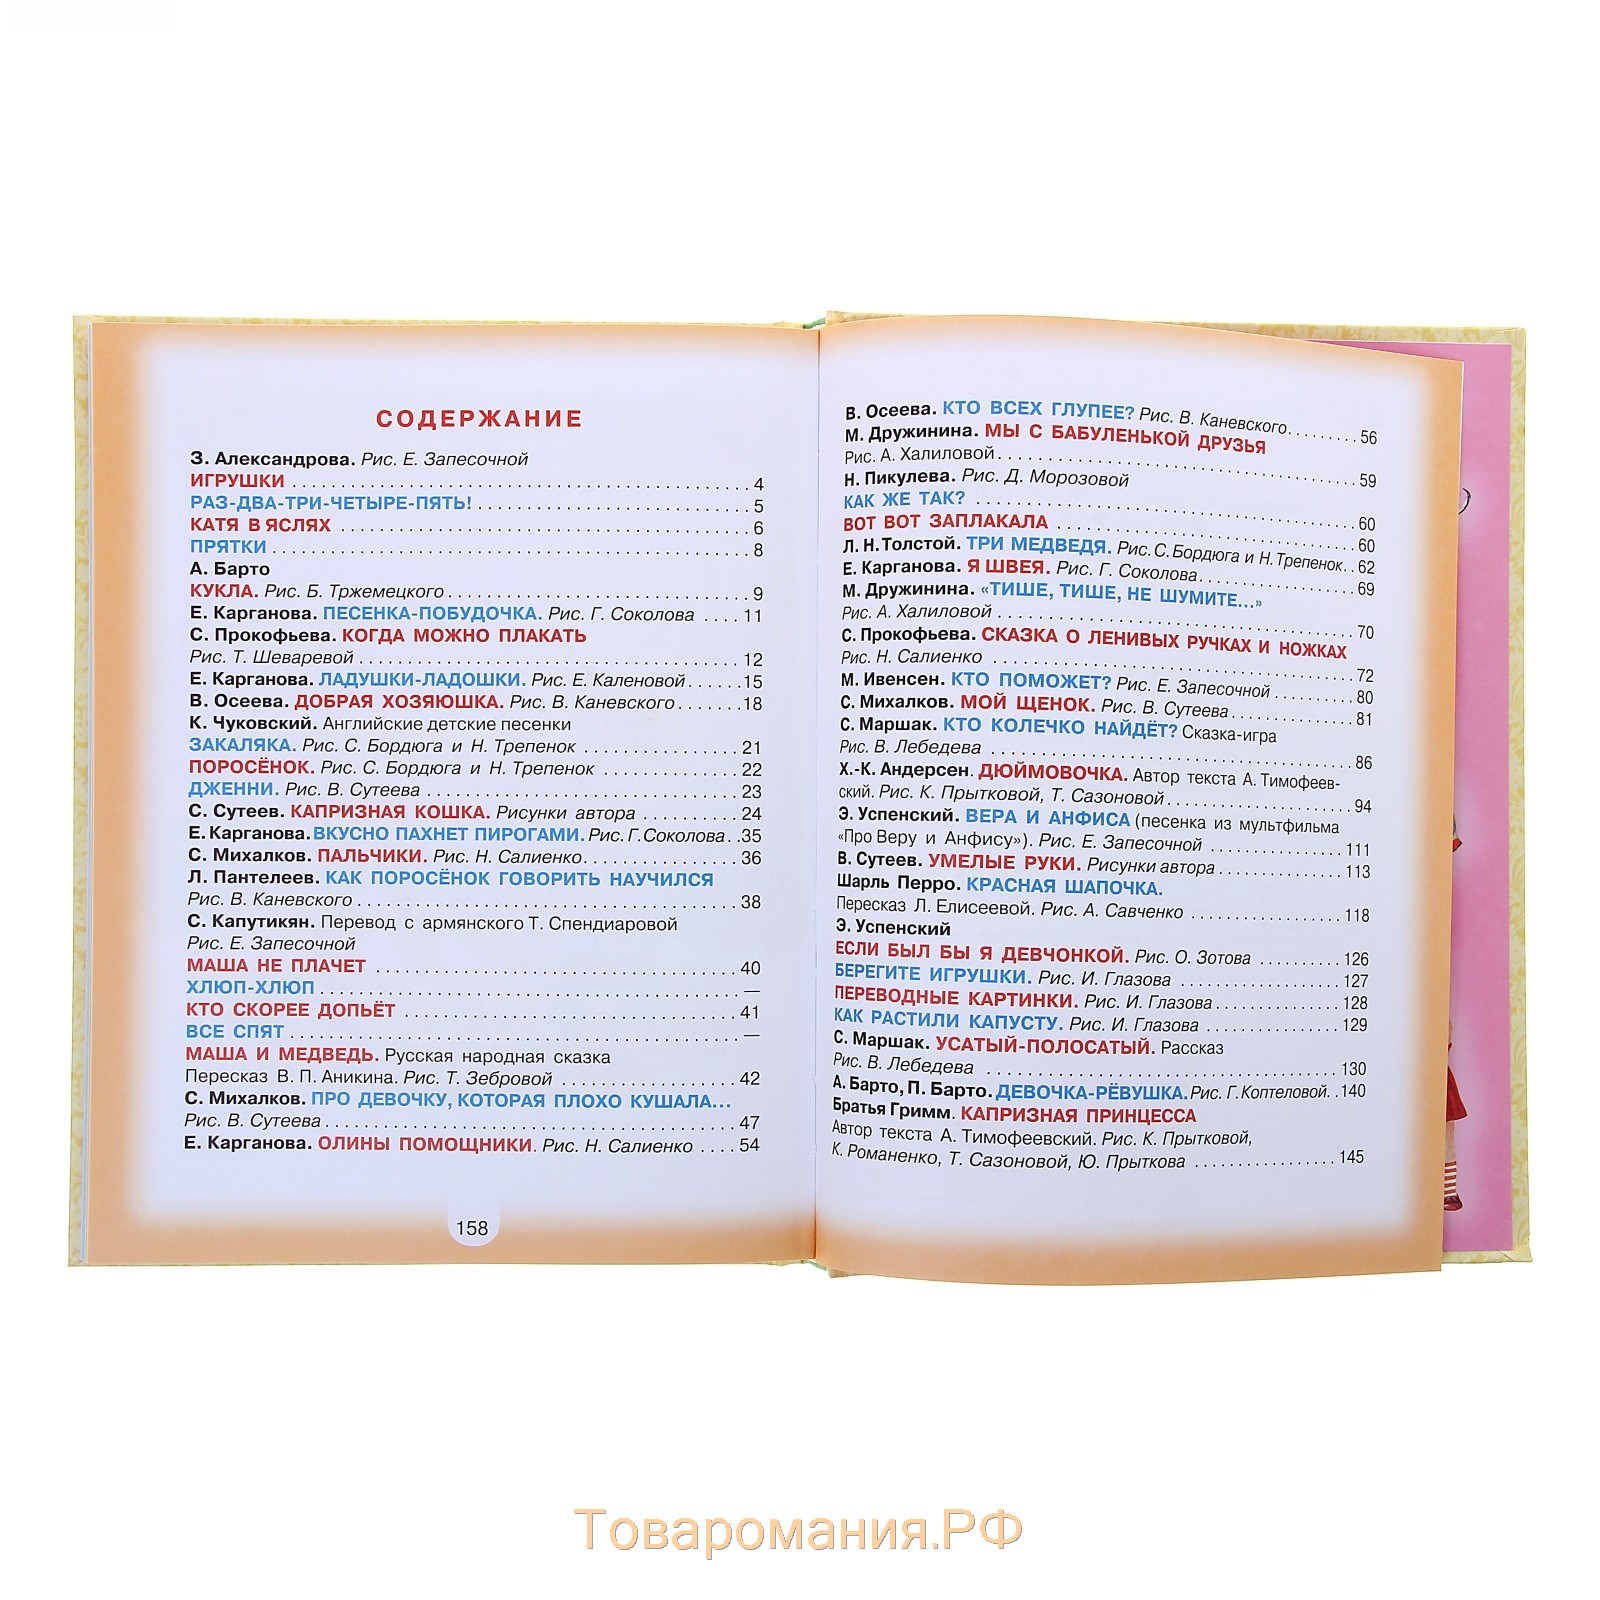 100 любимых сказок, стихов и песёнок для девочек Барто А.Л. и др.